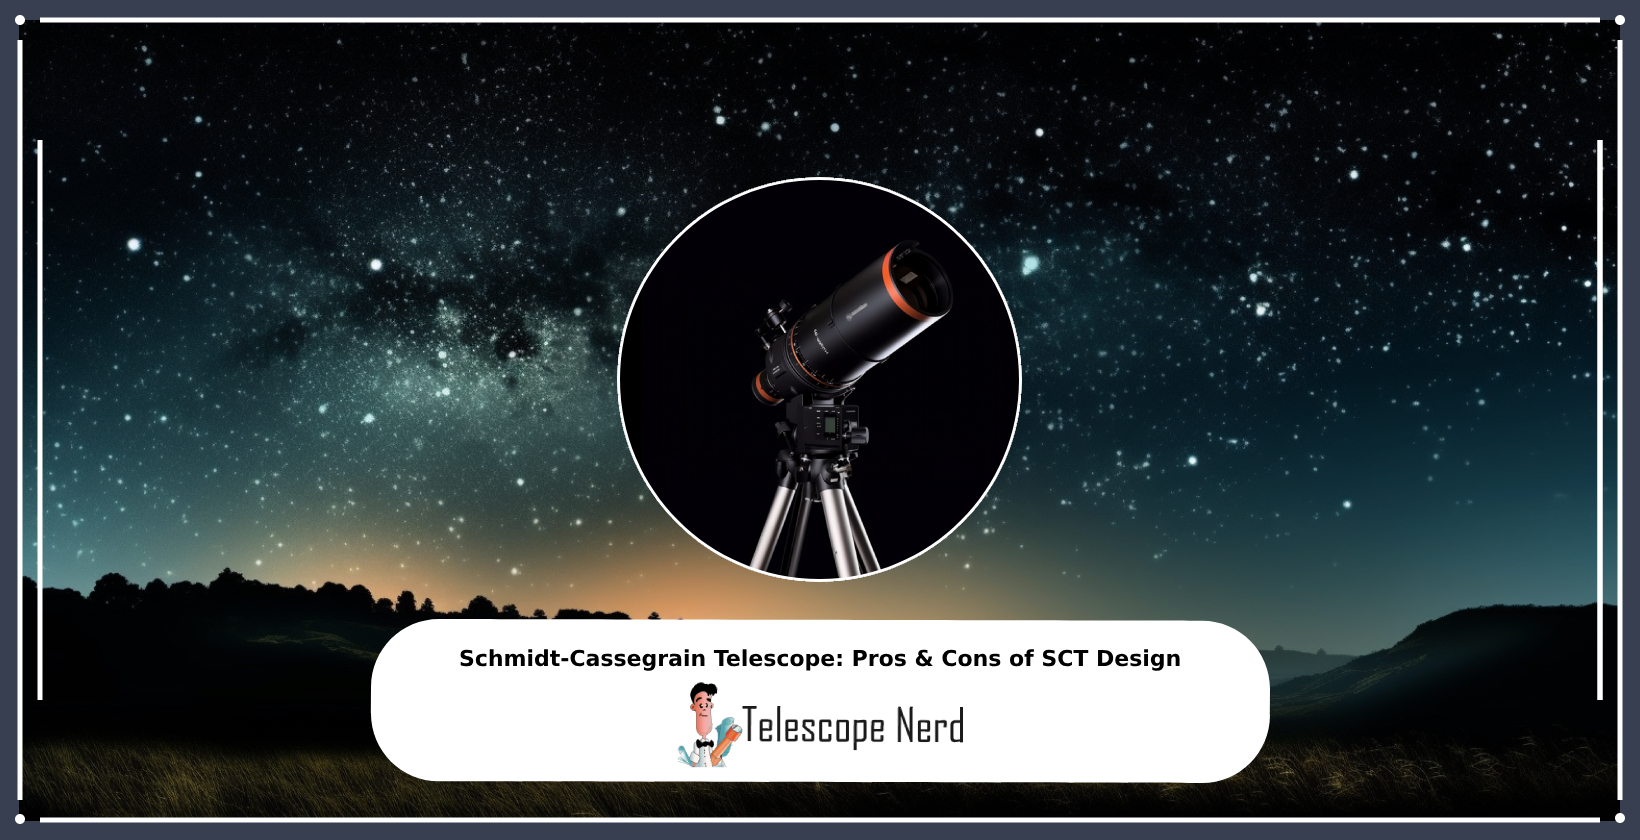 Schmidt-Cassegrain telescope and SCT optical system